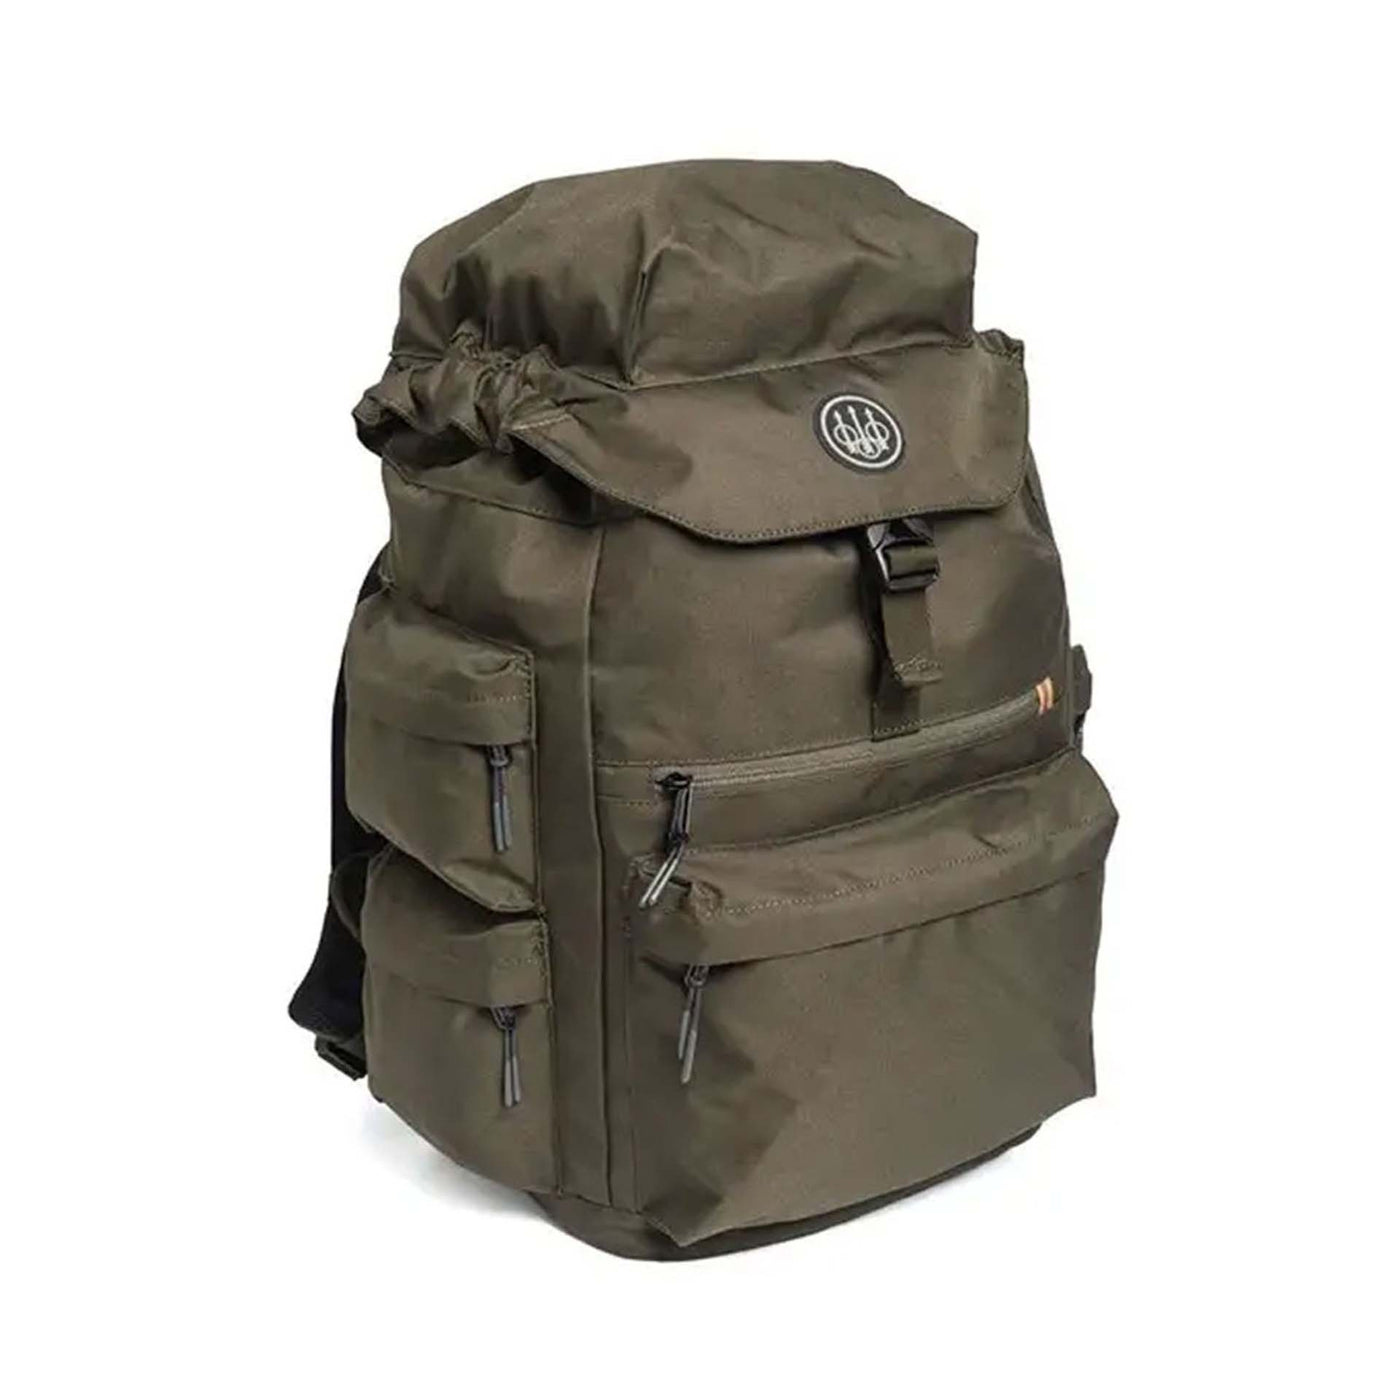 25 litre backpack 